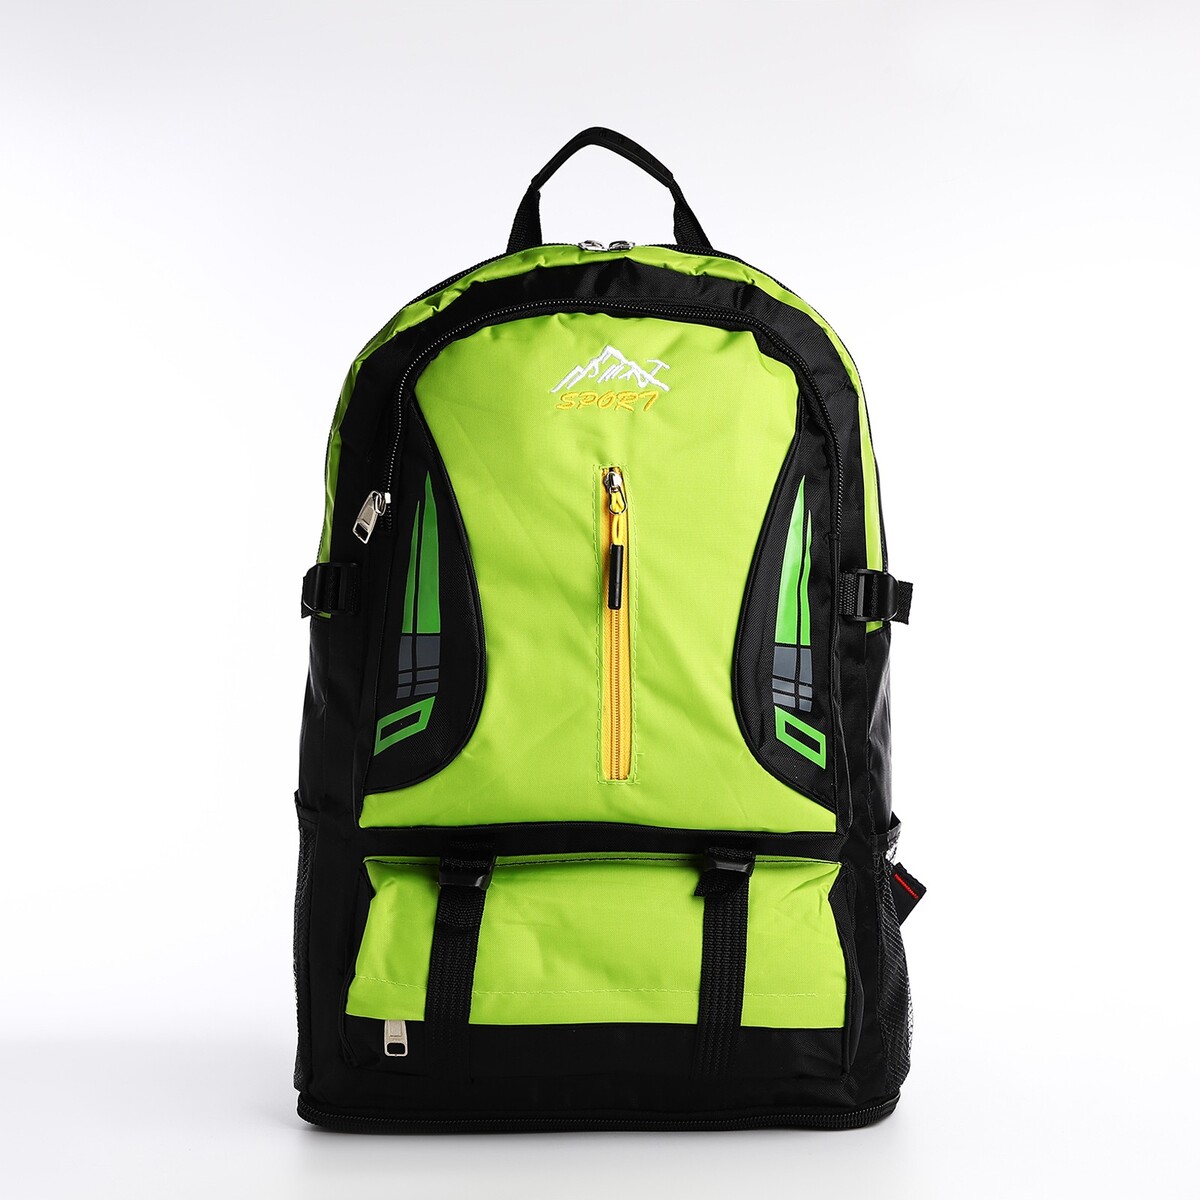 Рюкзак на молнии с увеличением, 65л, 4 наружных кармана, цвет зеленый рюкзак 2 отдела на молнии 4 наружных кармана желтый зеленый